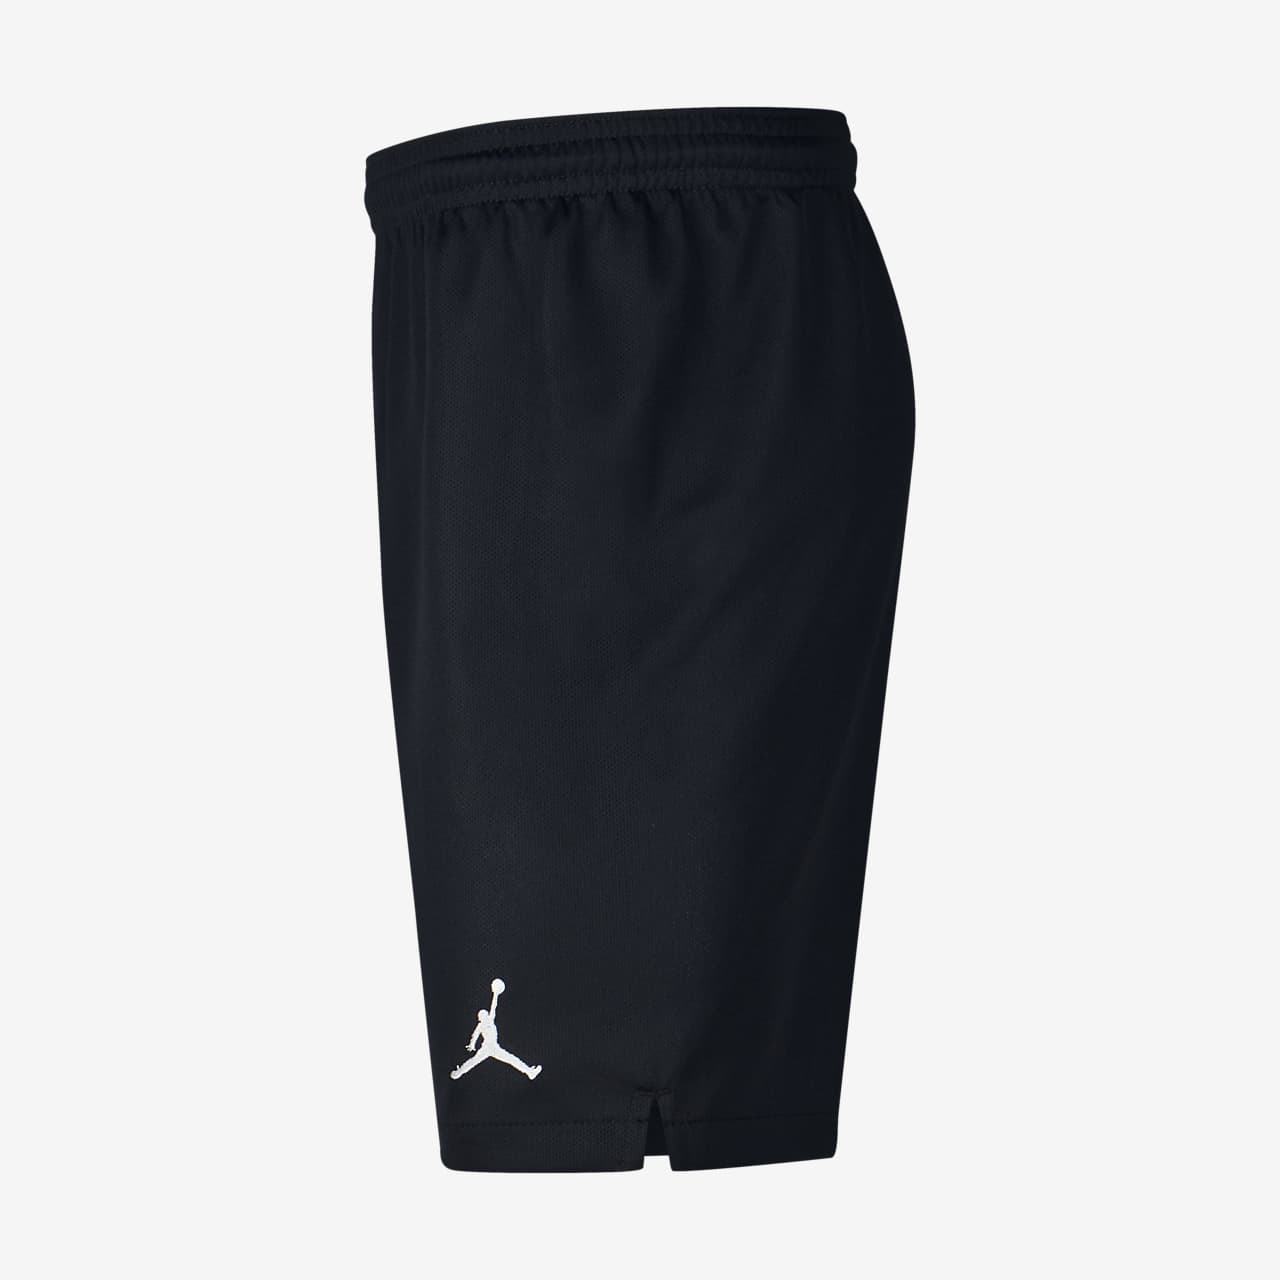 psg x jordan shorts